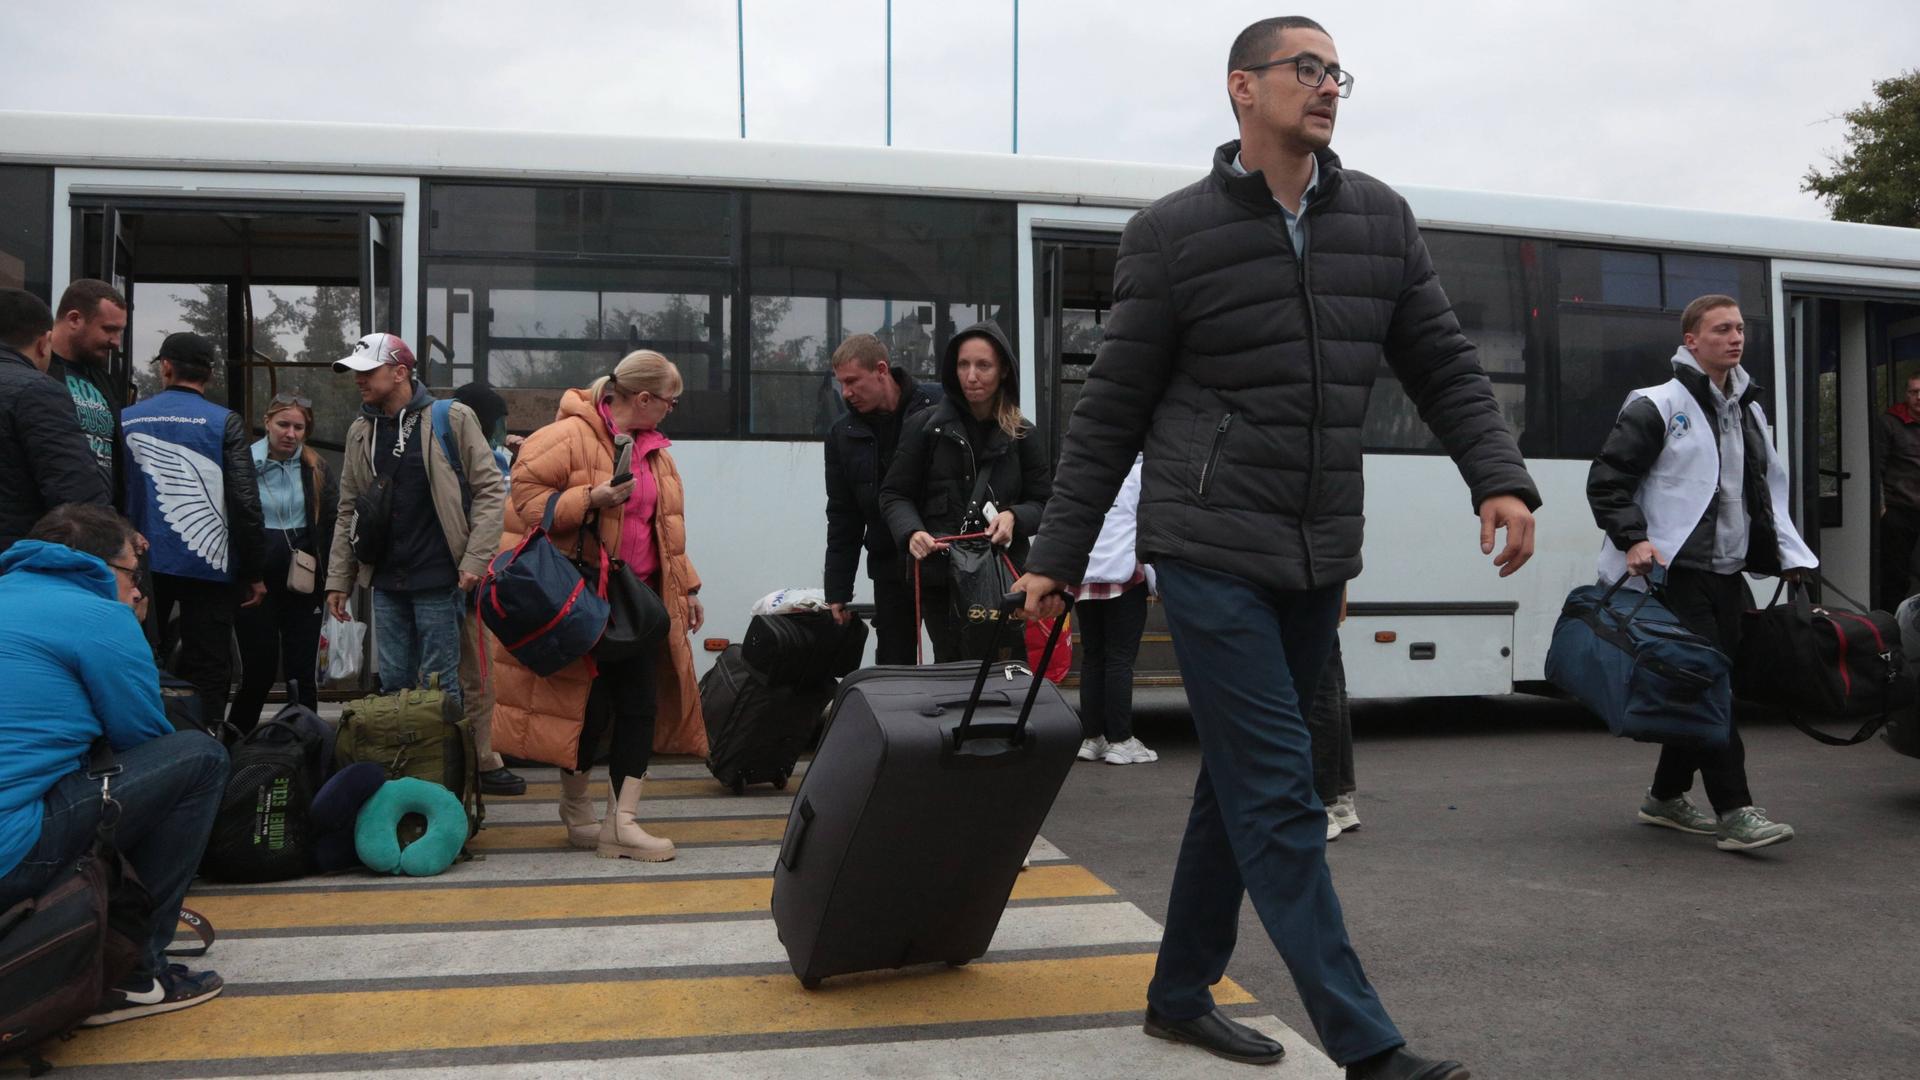 Menschen, die Cherson auf russische Aufforderung hin verlassen haben, verlassen einen Bus in der Nähe eines Bahnhofs auf der Krim